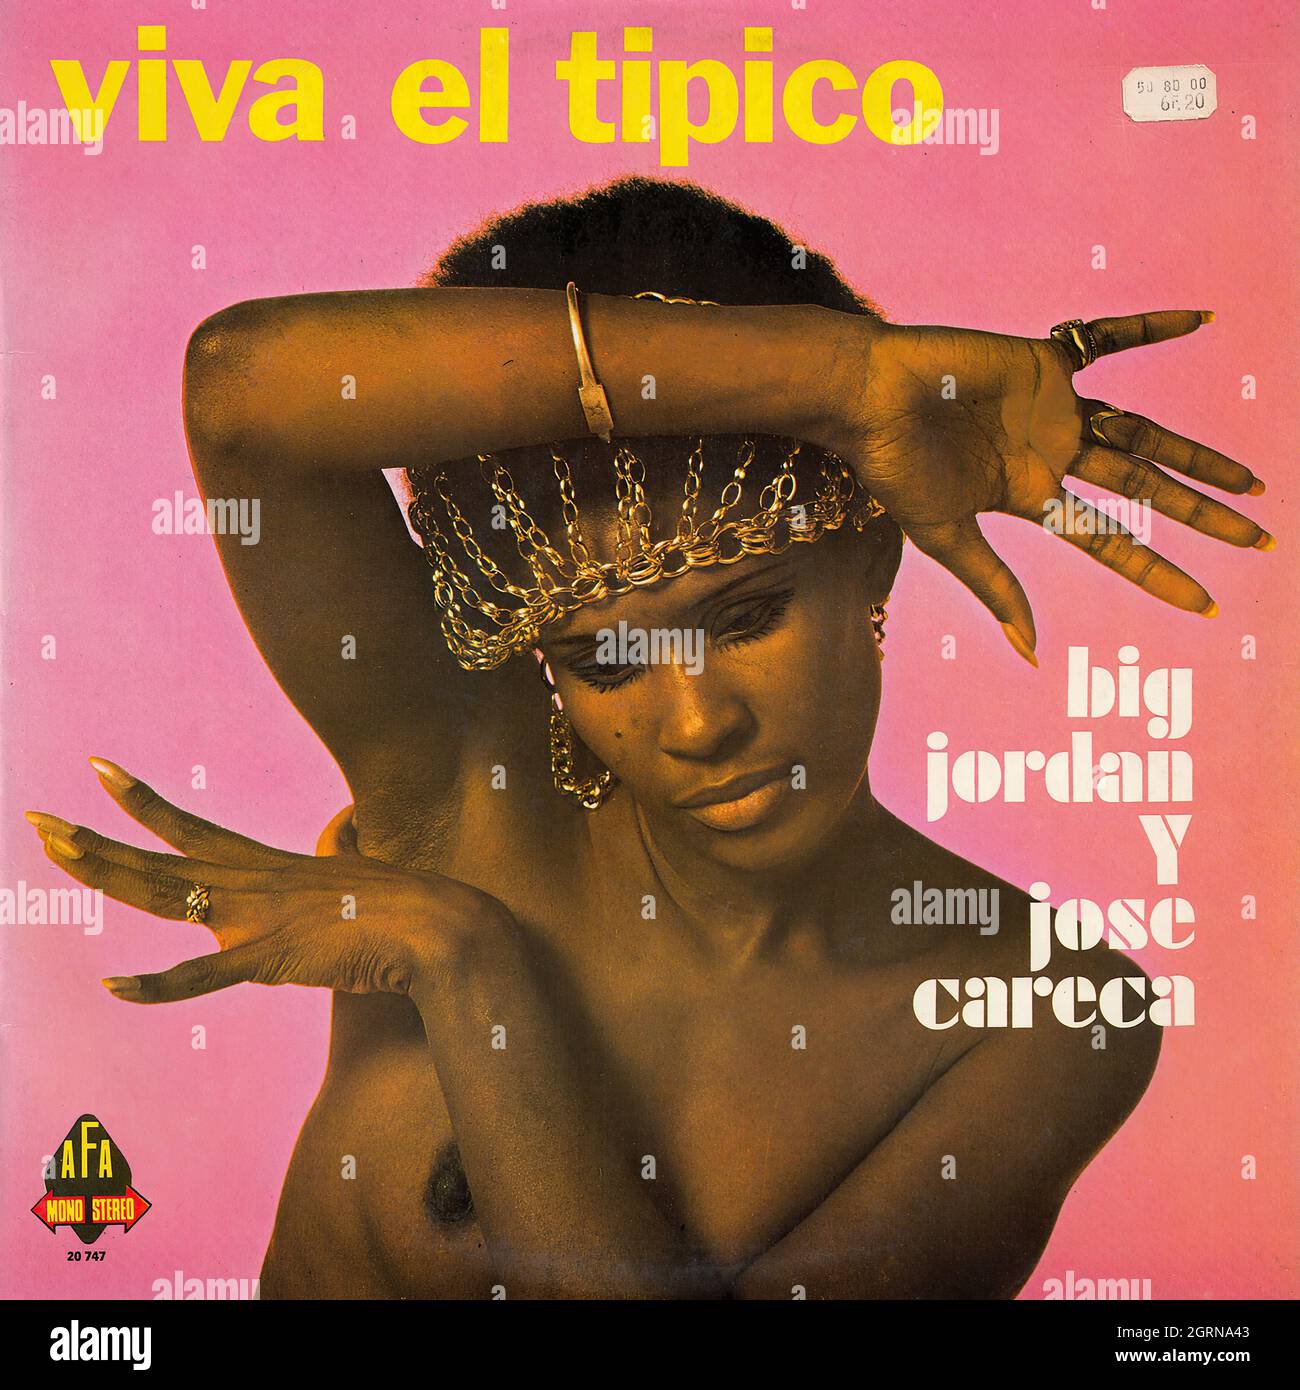 Big Jordan y Jose Careca - Viva el tipico - Vintage Vinyl Record Cover Stock Photo